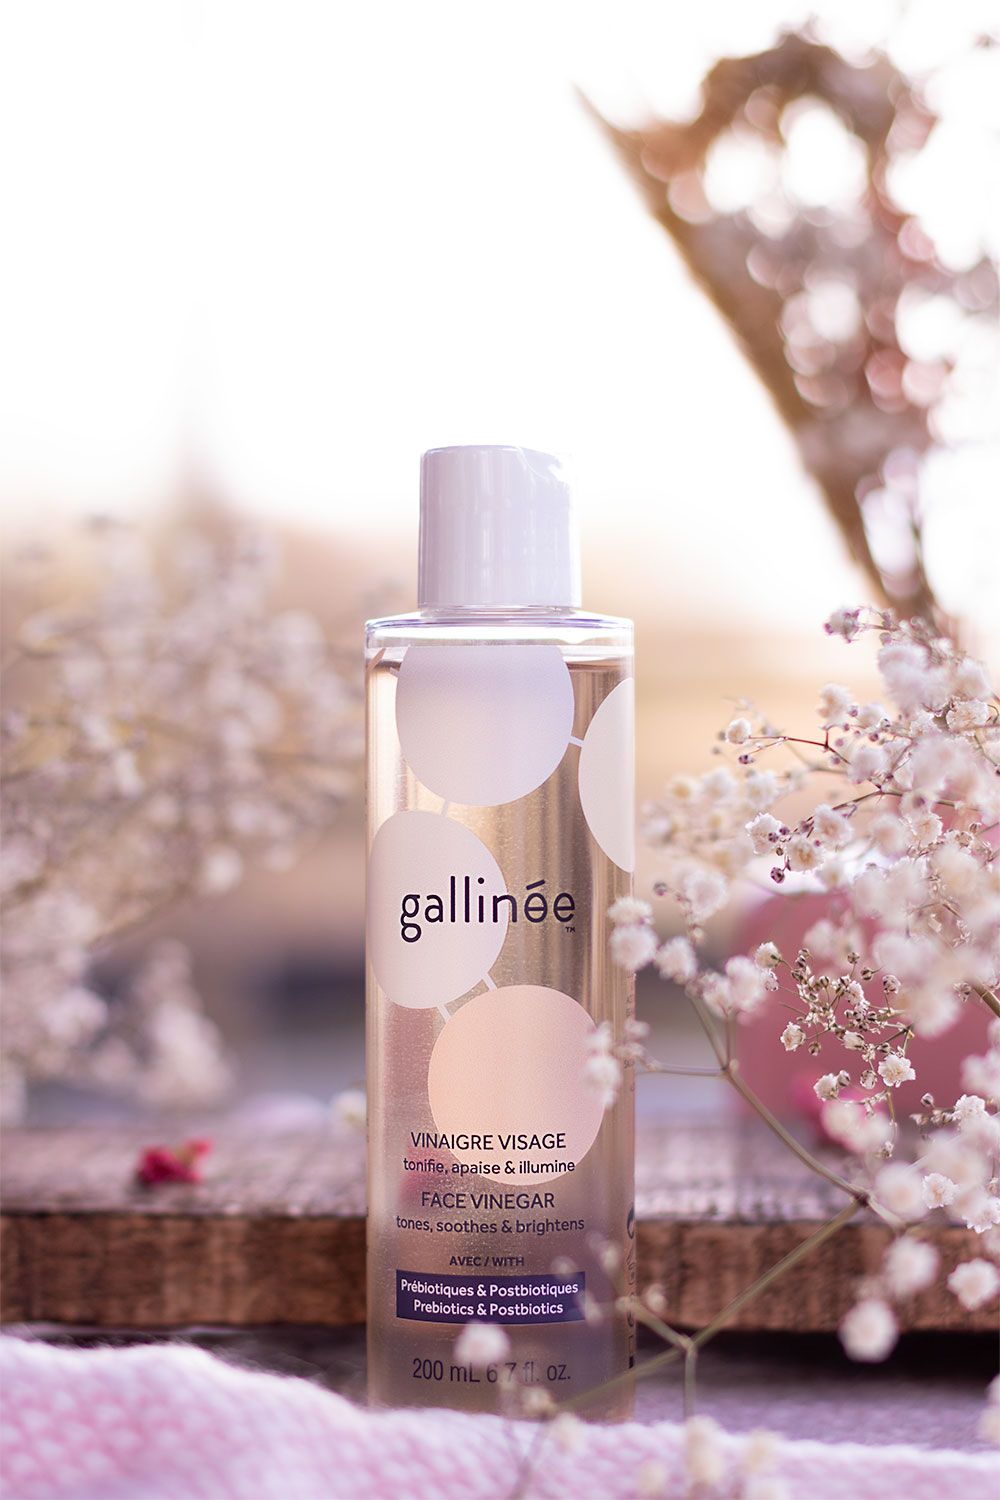 Le vinaigre visage de Gallinée posé sur un plaid rose, au milieu des fleurs séchées devant une planche en bois